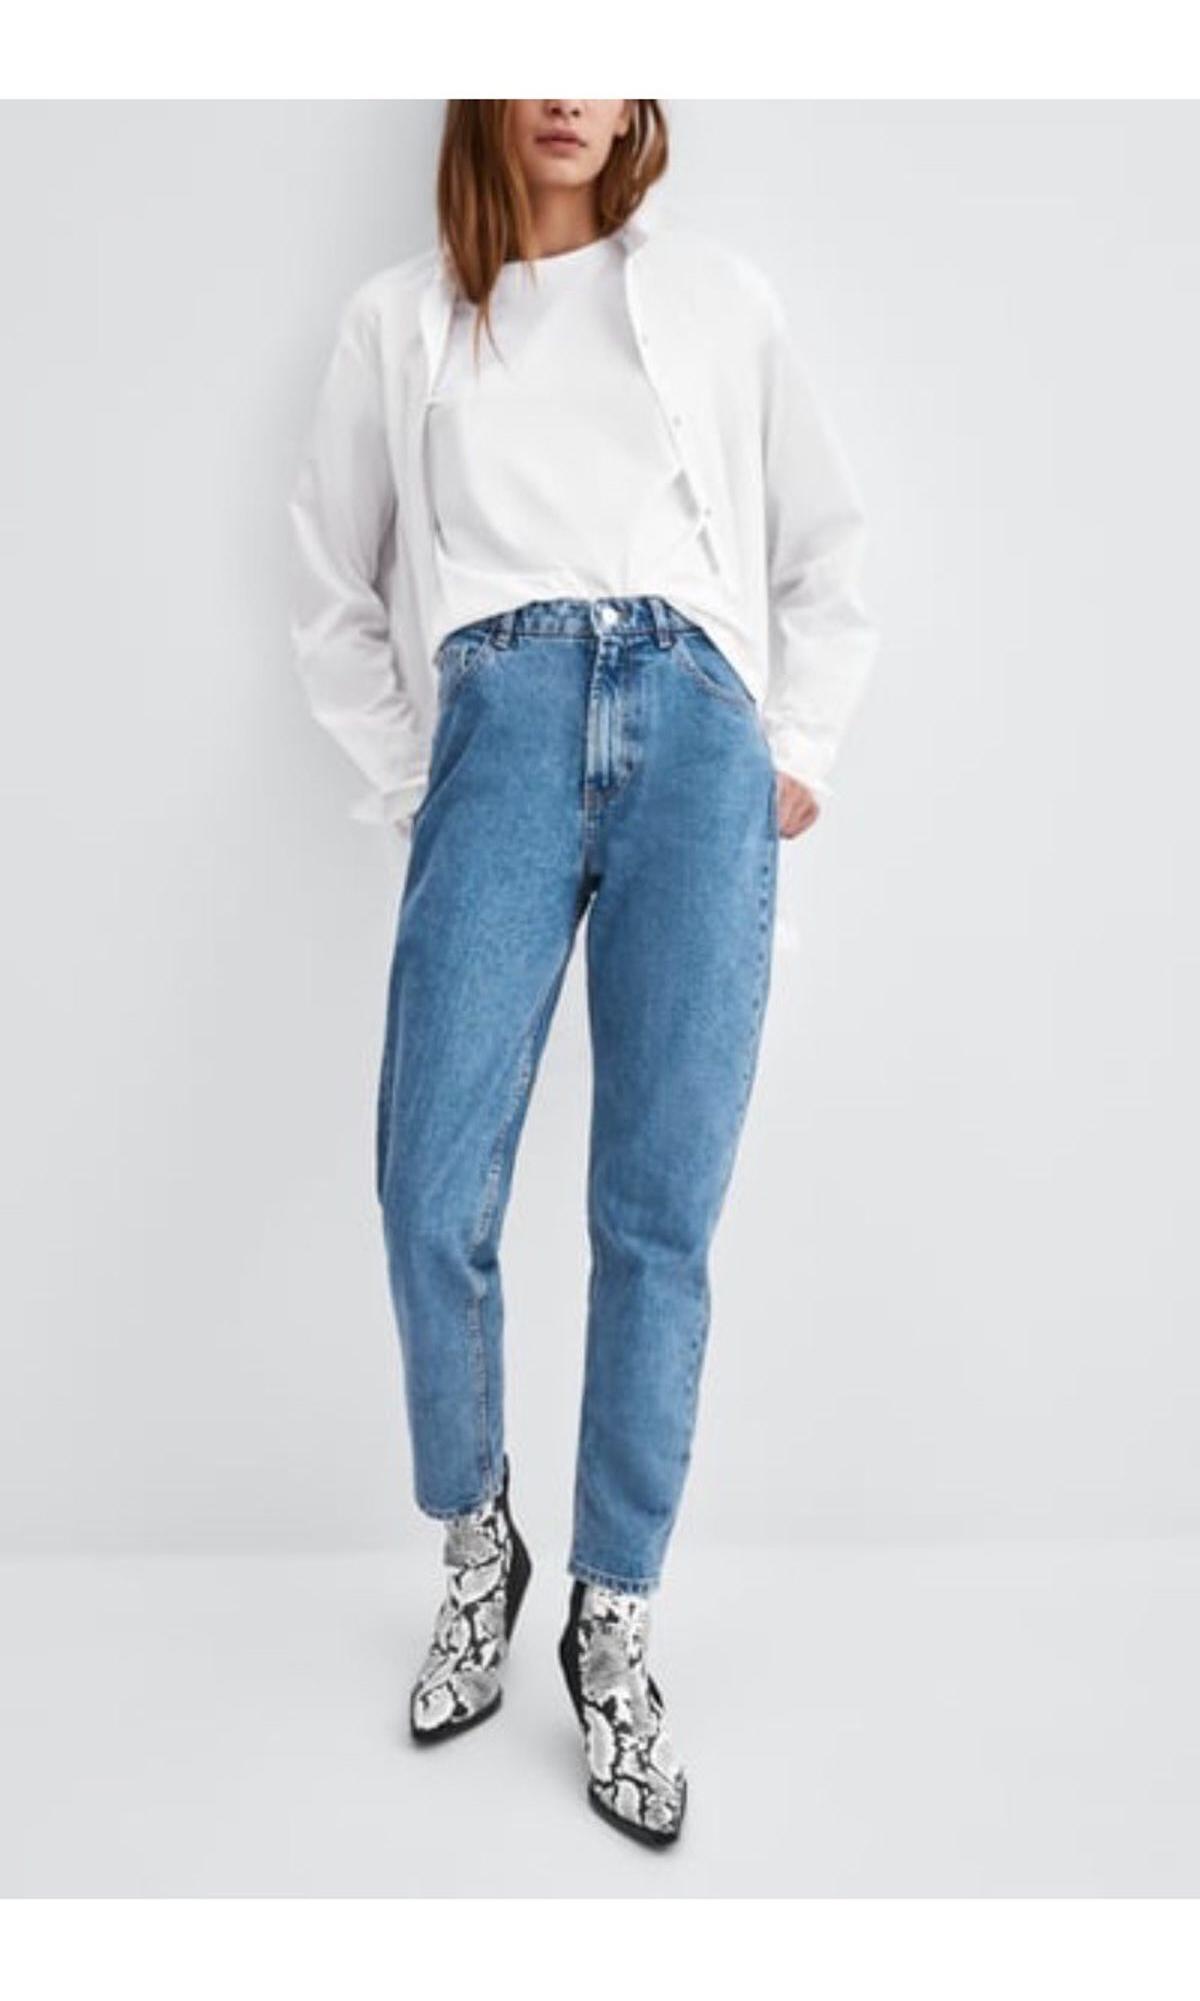 Zara Mom Jeans, Women's Fashion 